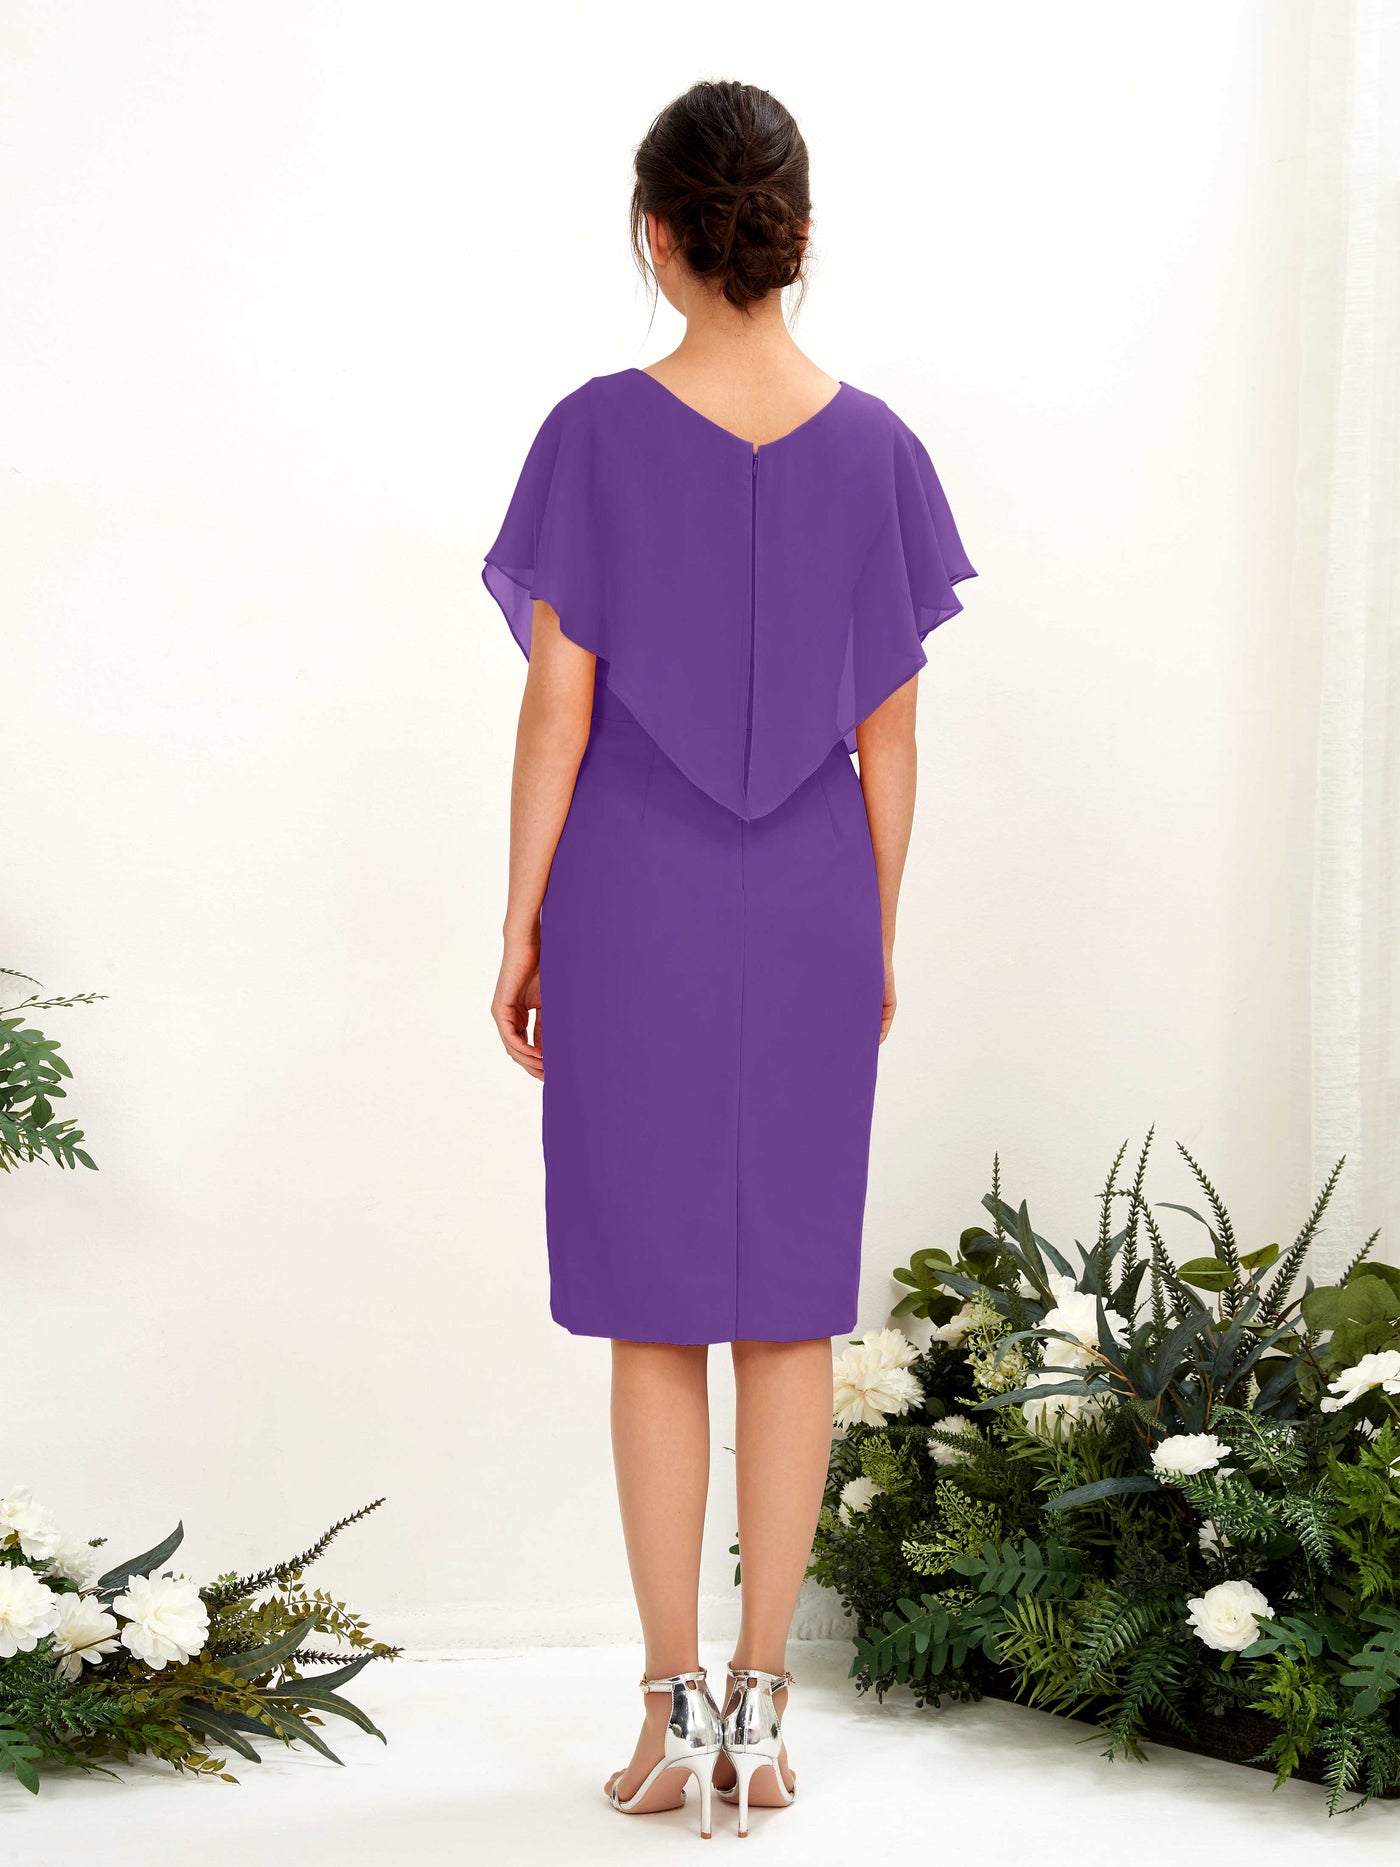 V-neck Short Sleeves Chiffon Bridesmaid Dress - Regency (81222228)#color_regency